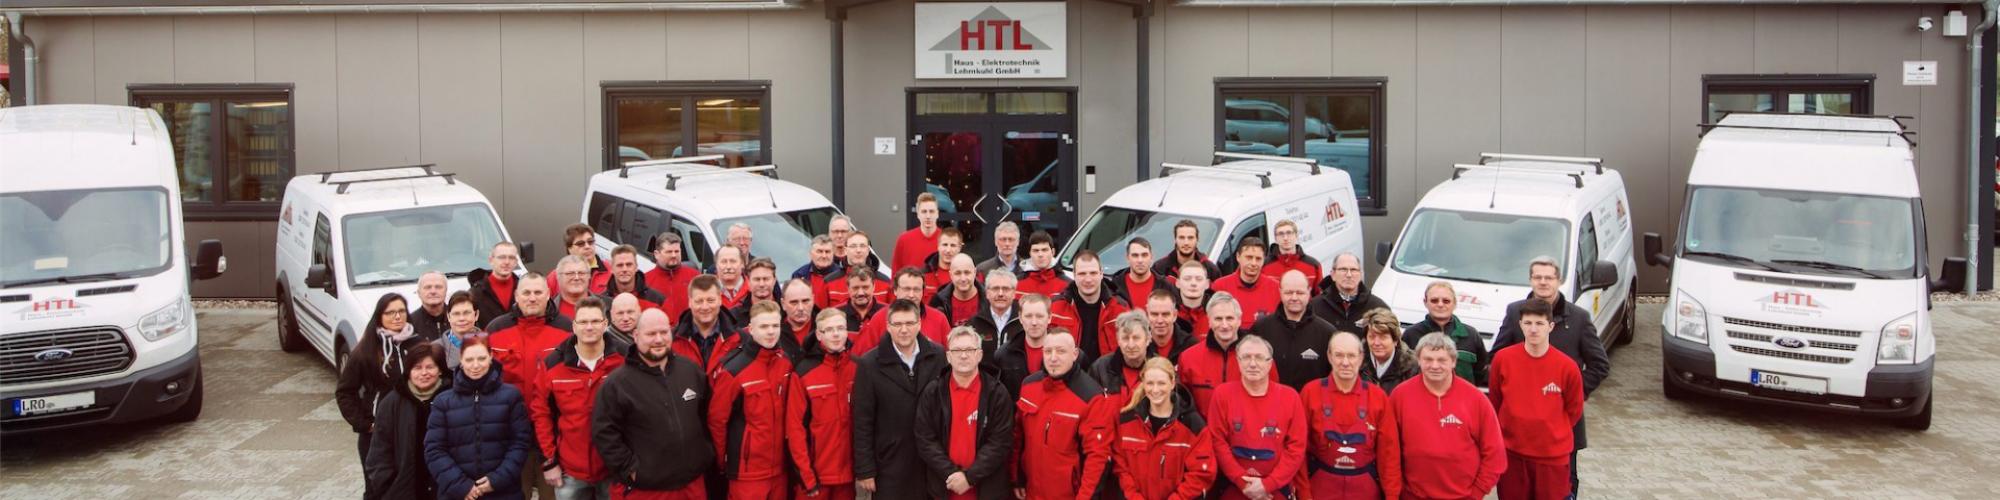 HTL Haus-Elektrotechnik Lehmkuhl GmbH